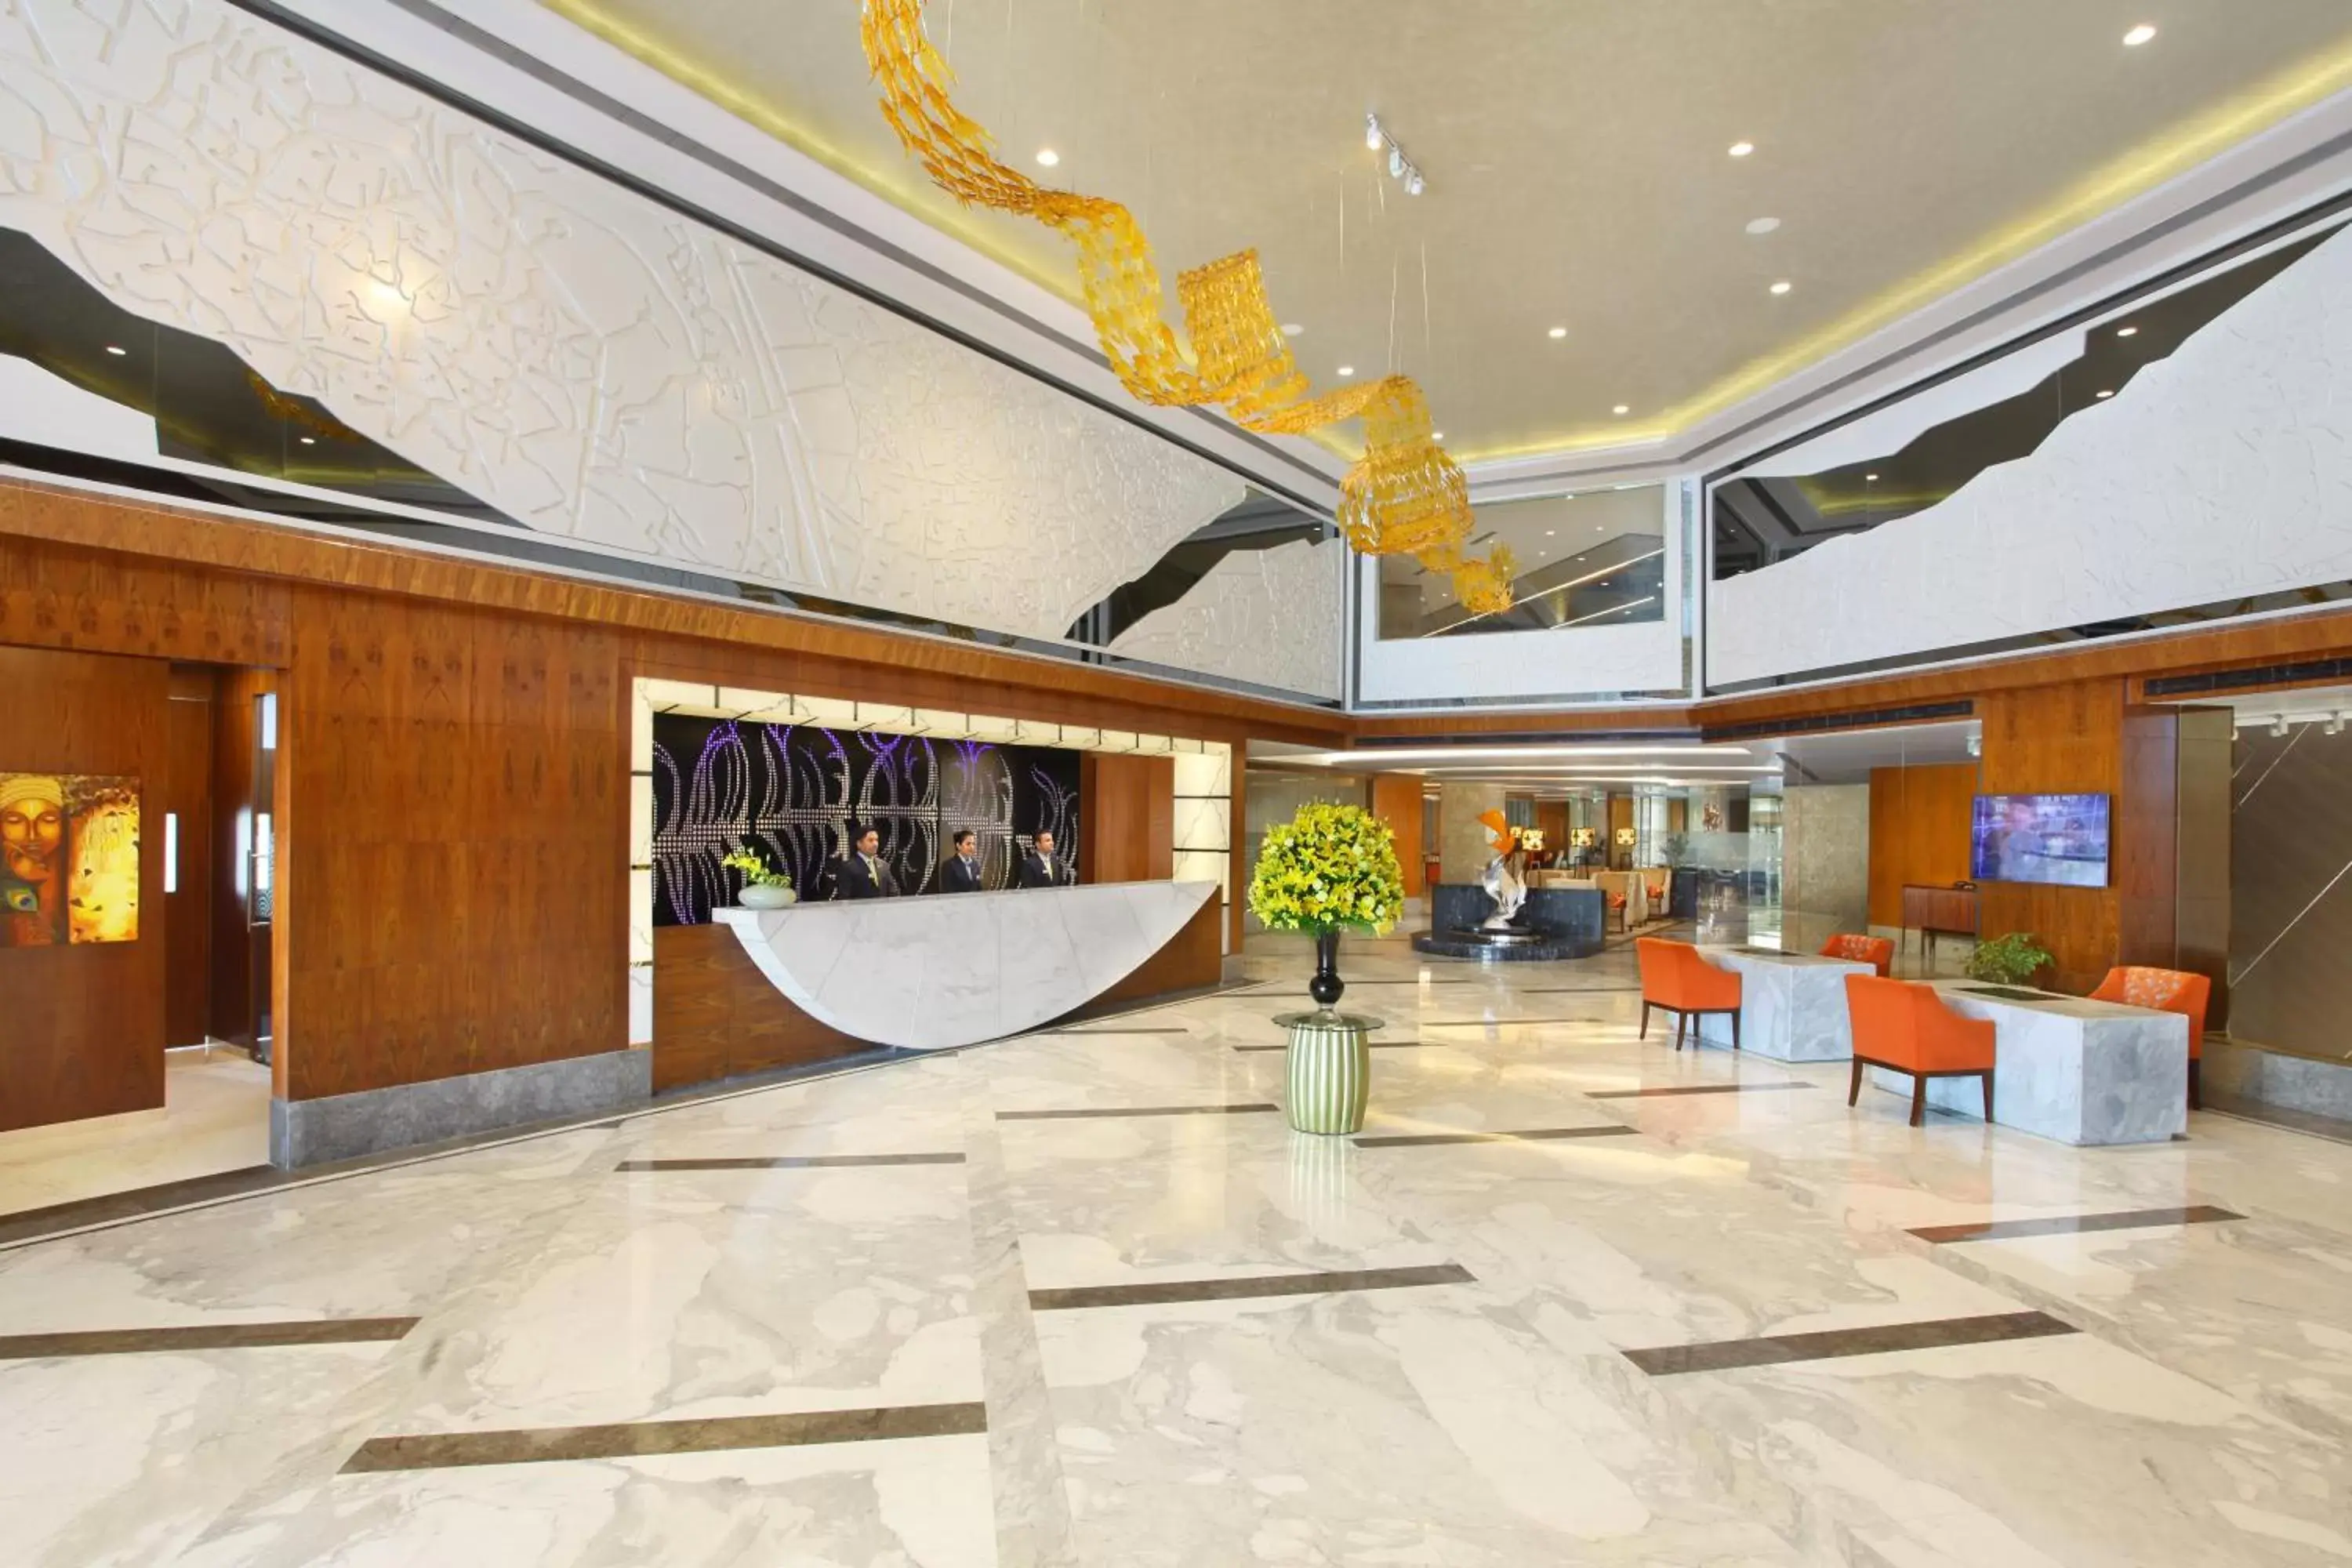 Lobby or reception, Lobby/Reception in Radisson Blu Jammu